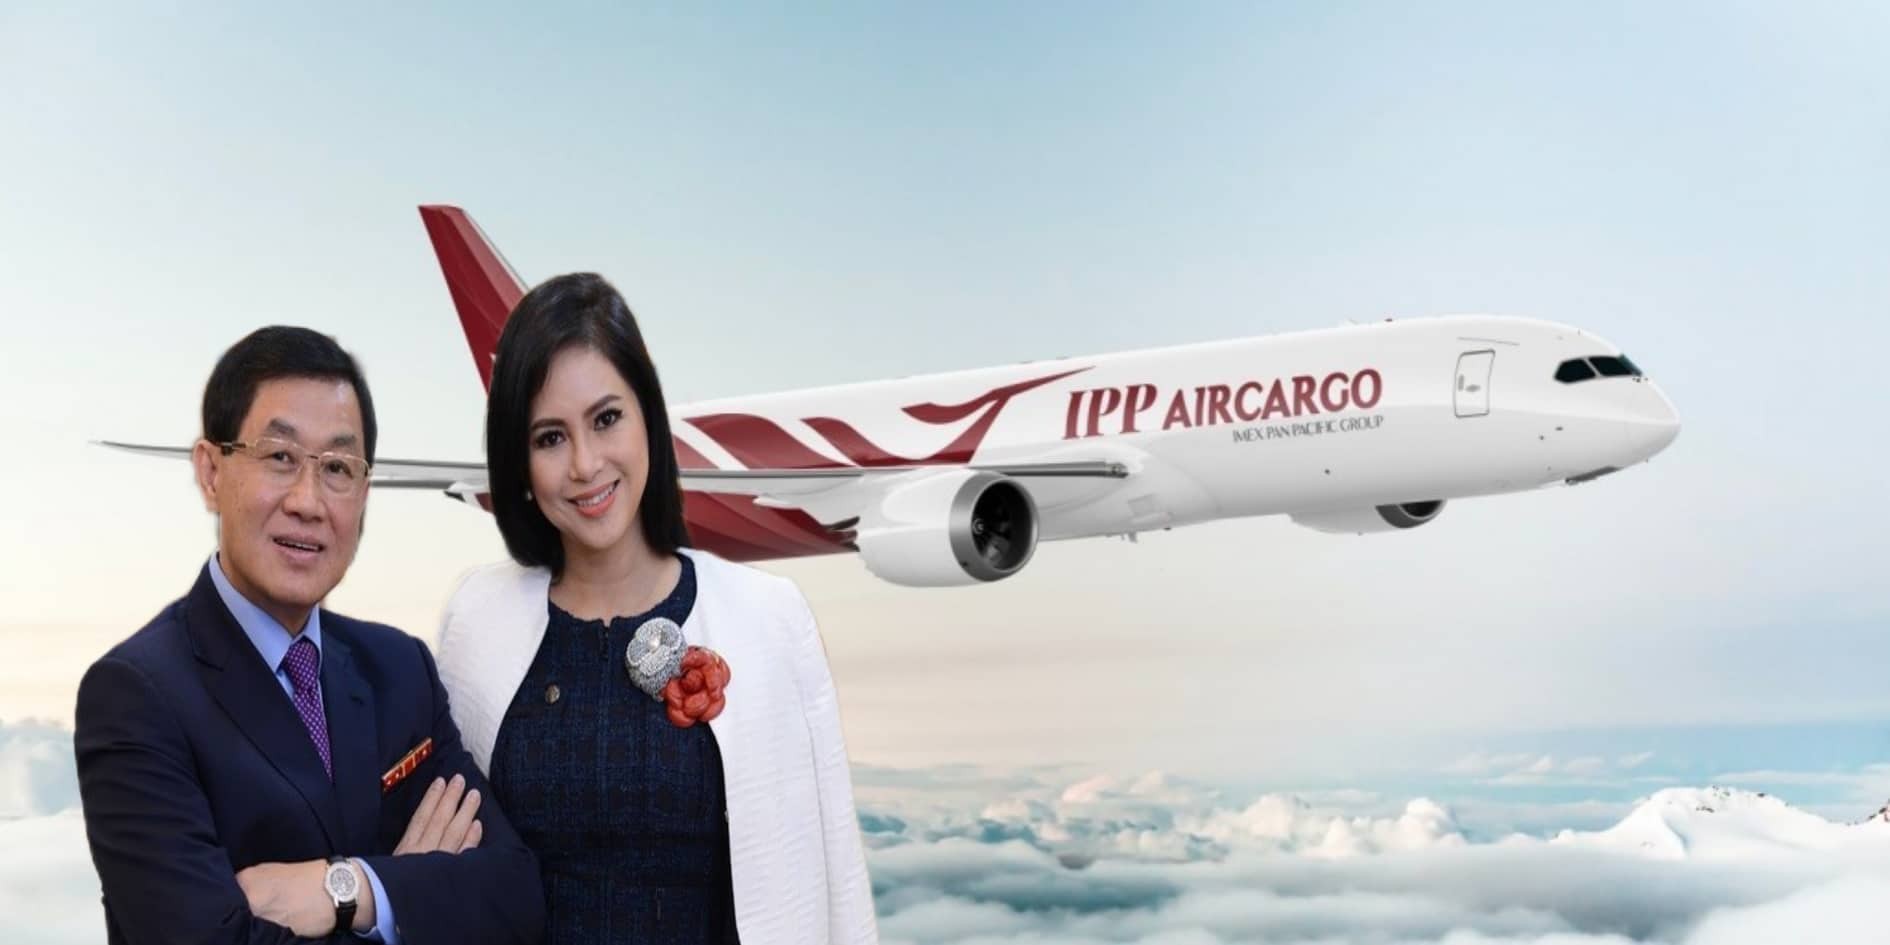 PP Group của vợ chồng bà Thuỷ Tiên đang rất tham vọng với hãng hàng không chuyên chở hàng.